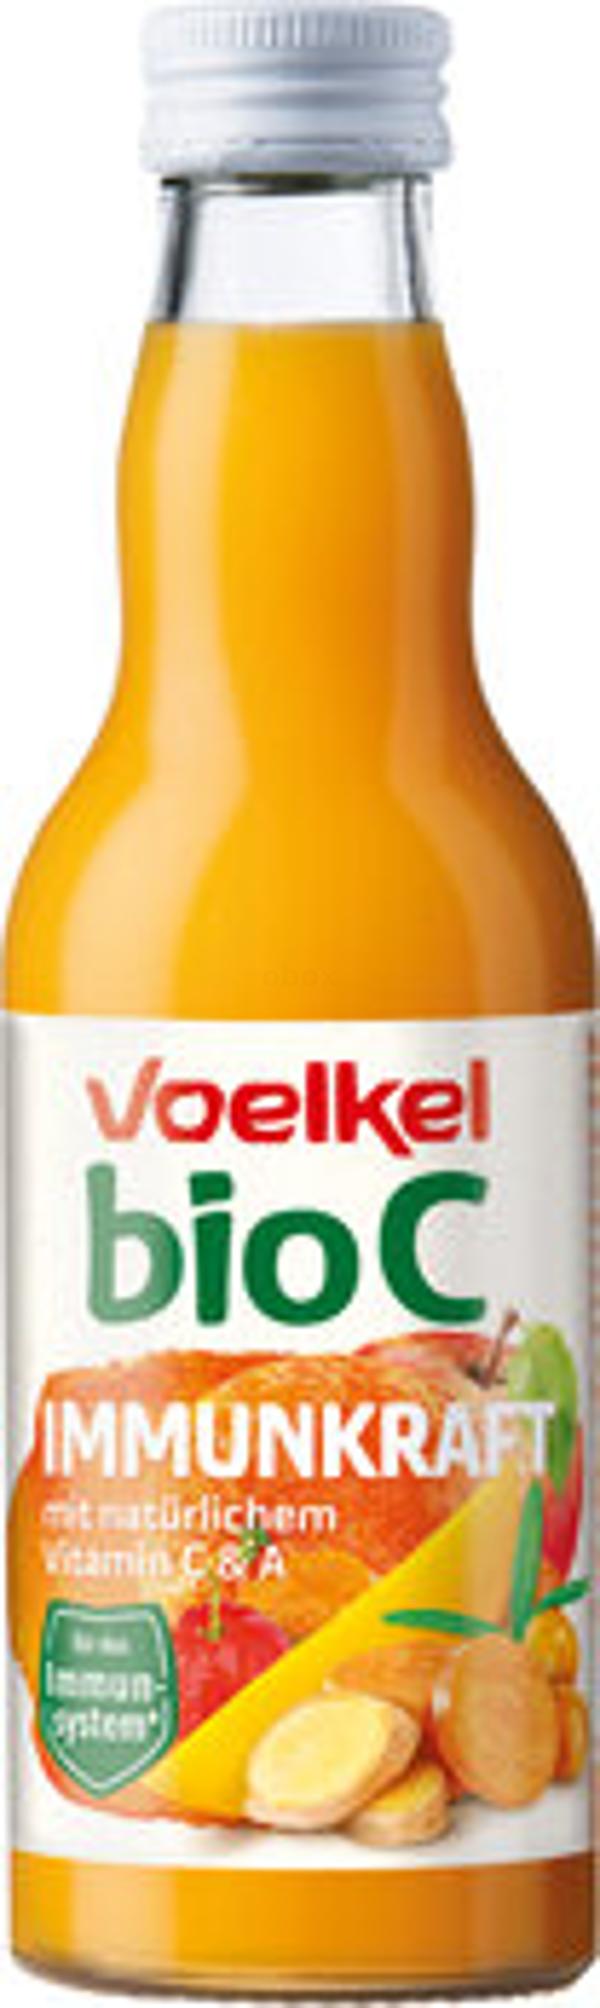 Produktfoto zu bioC Immunkraft -Tagesbedarf-Flasche-0,2l